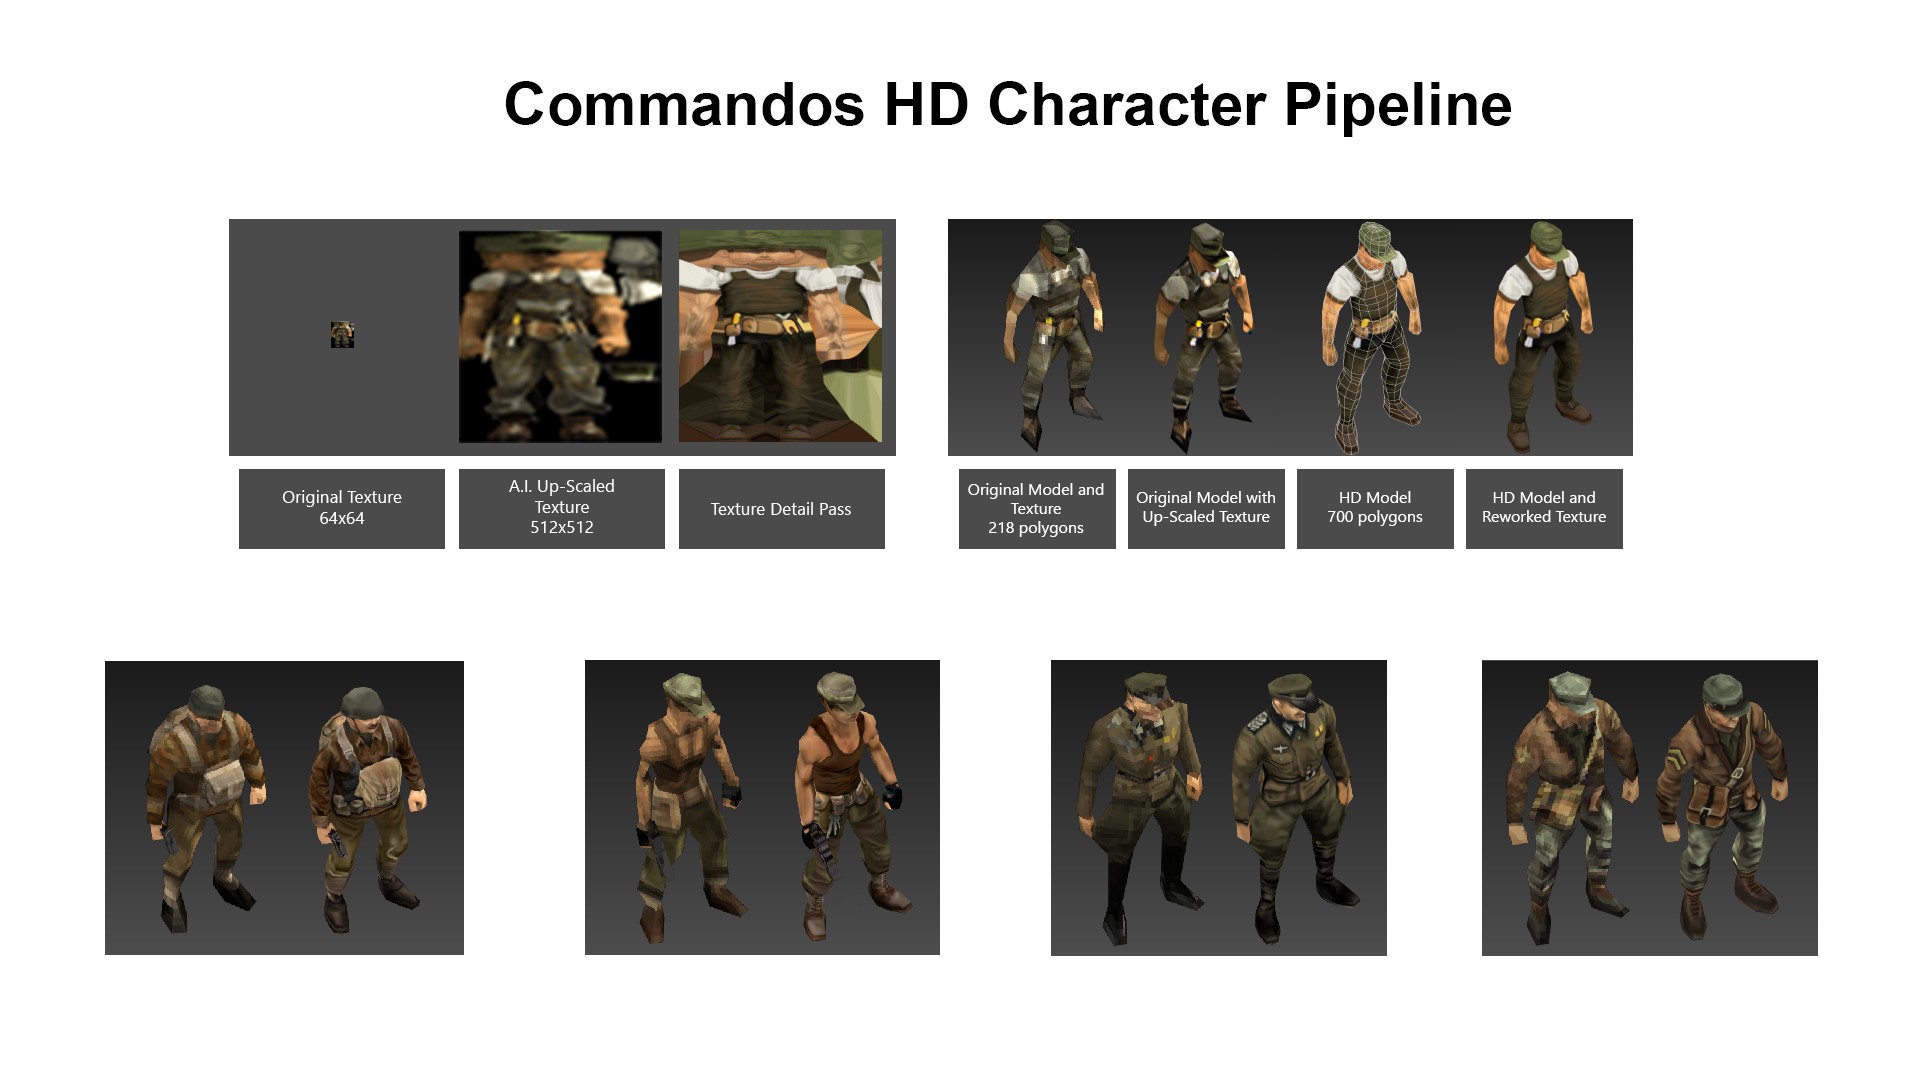 commandos 2 hd remaster